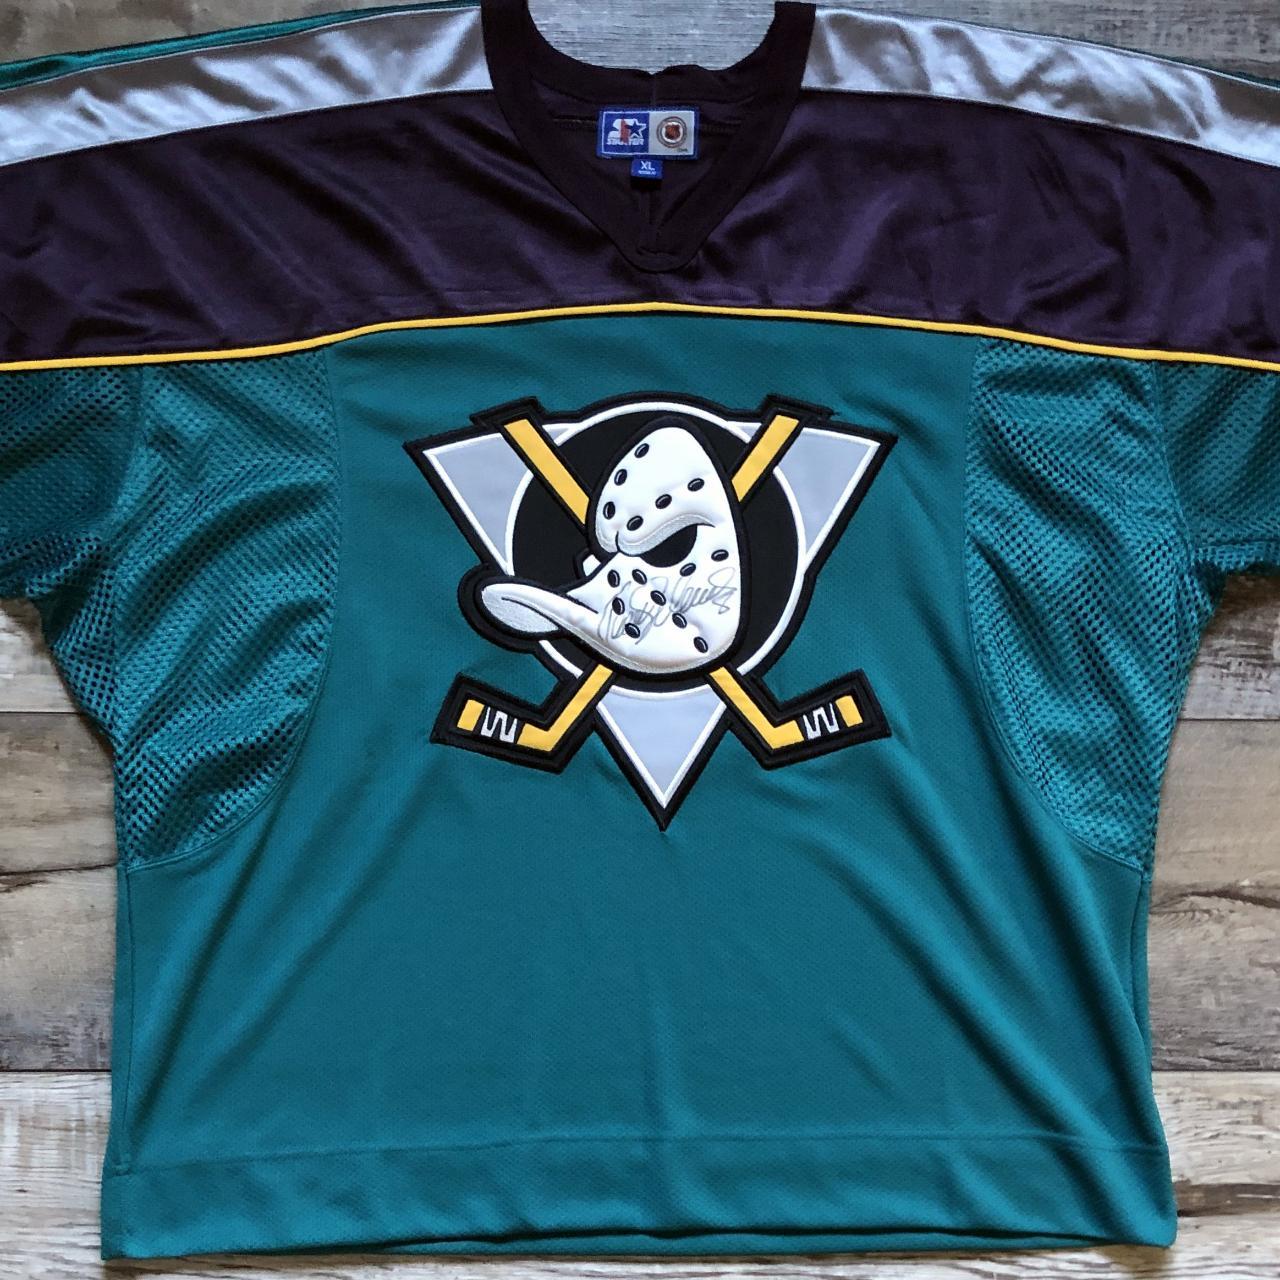 1990's Anaheim Ducks NHL Jersey (FREE - Depop